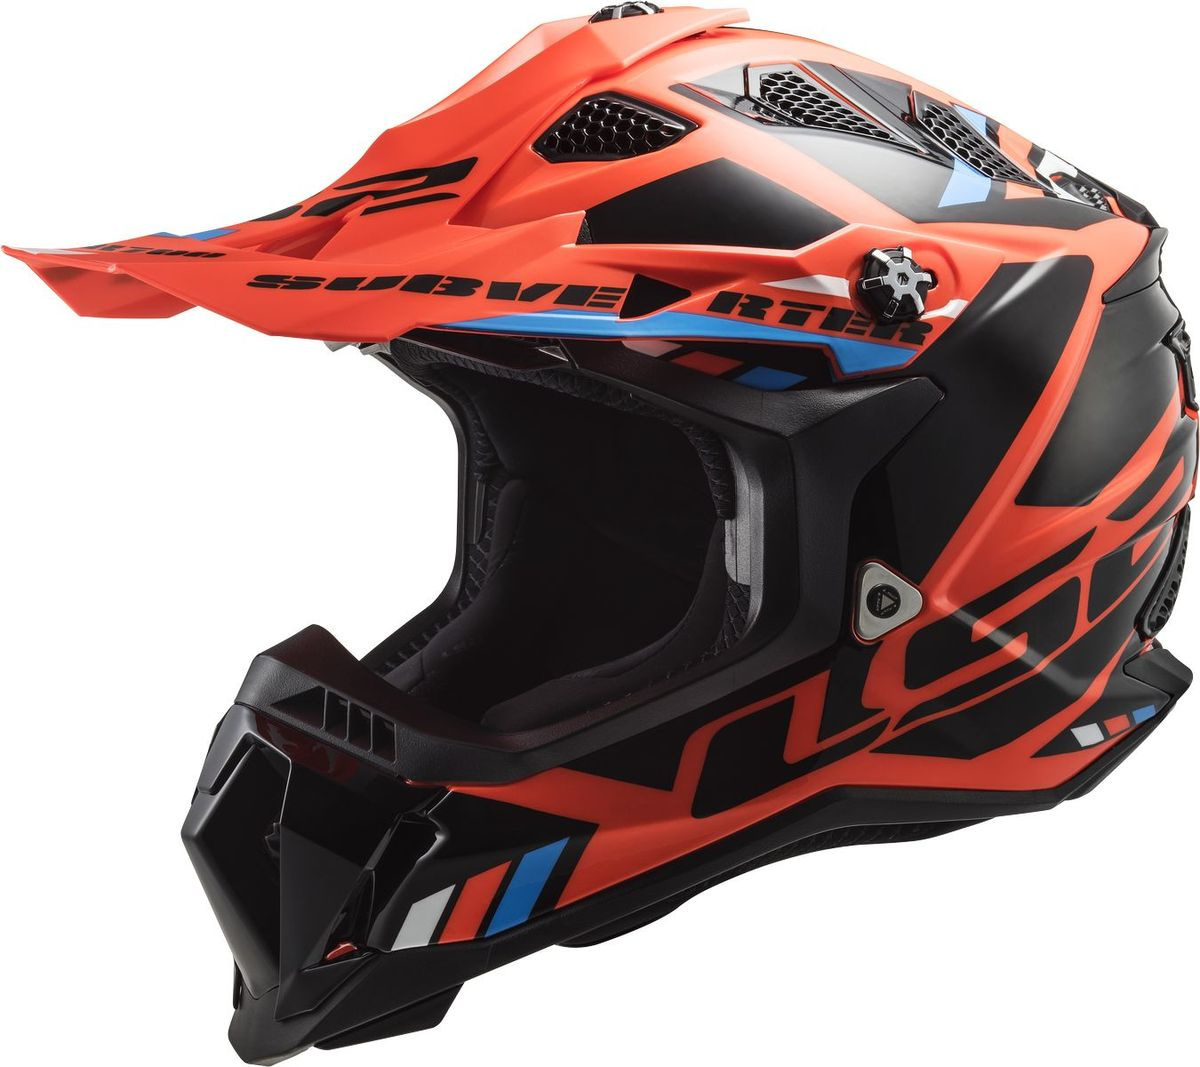 Шлем LS2 MX700 Subverter Evo Stomp для мотокросса, оранжево-черный